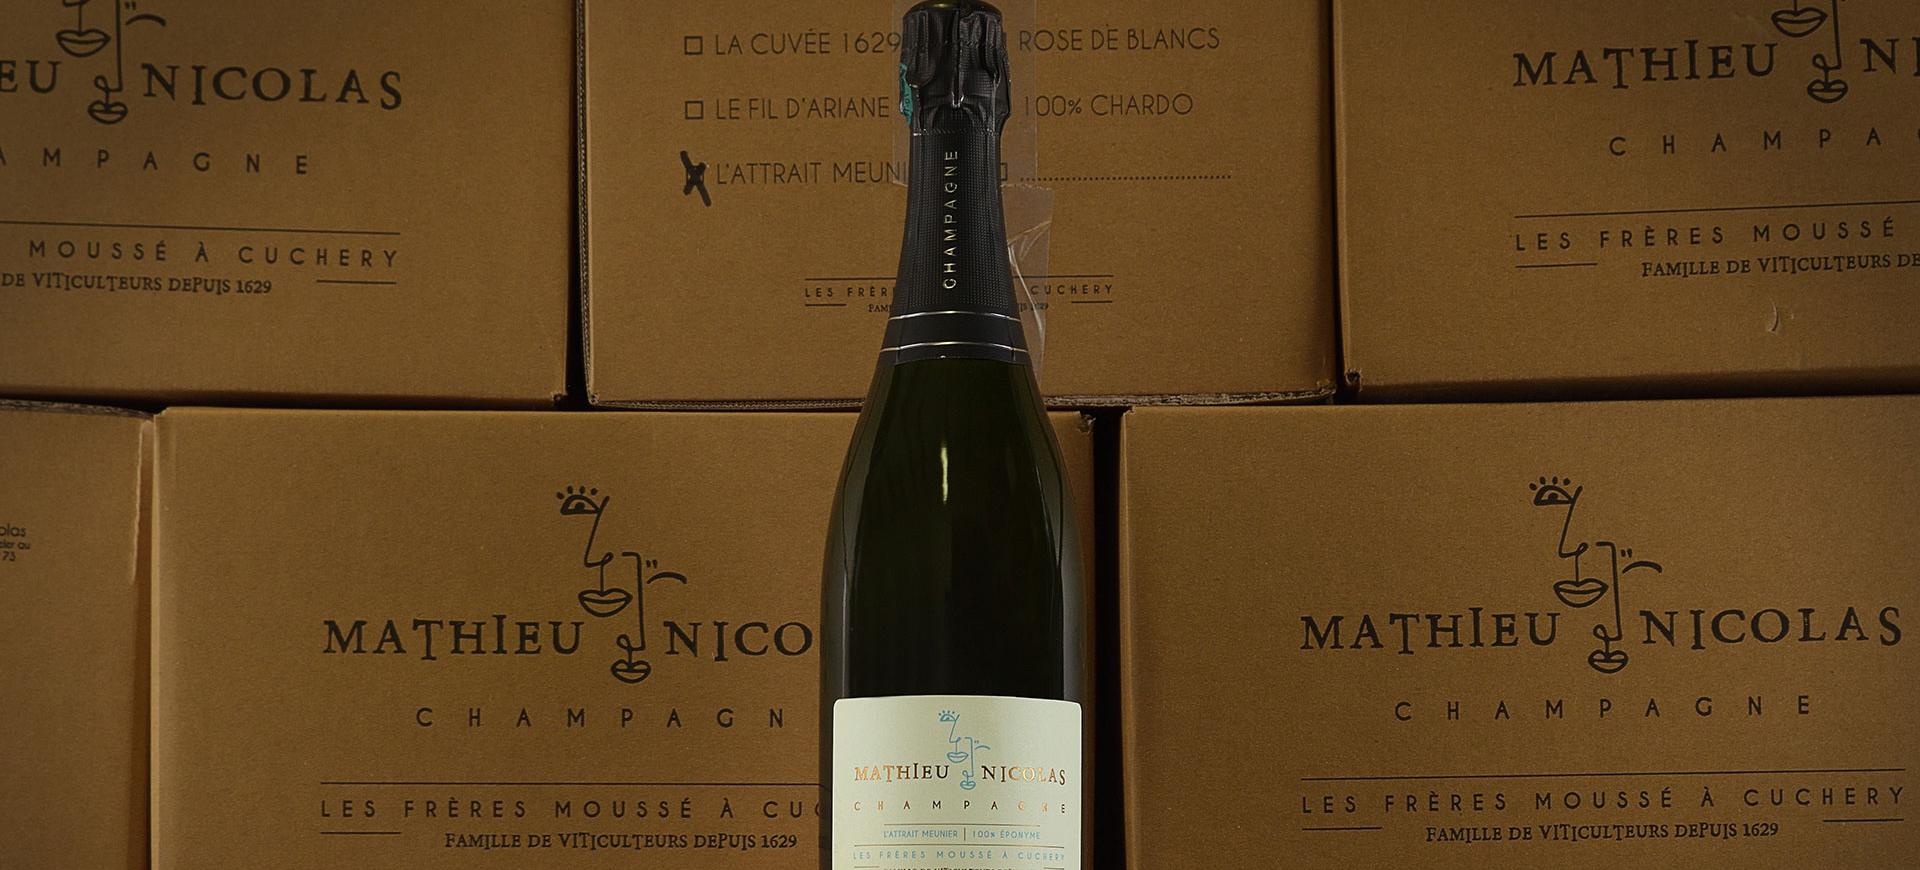 Champagne Mathieu - Nicolas Moussé